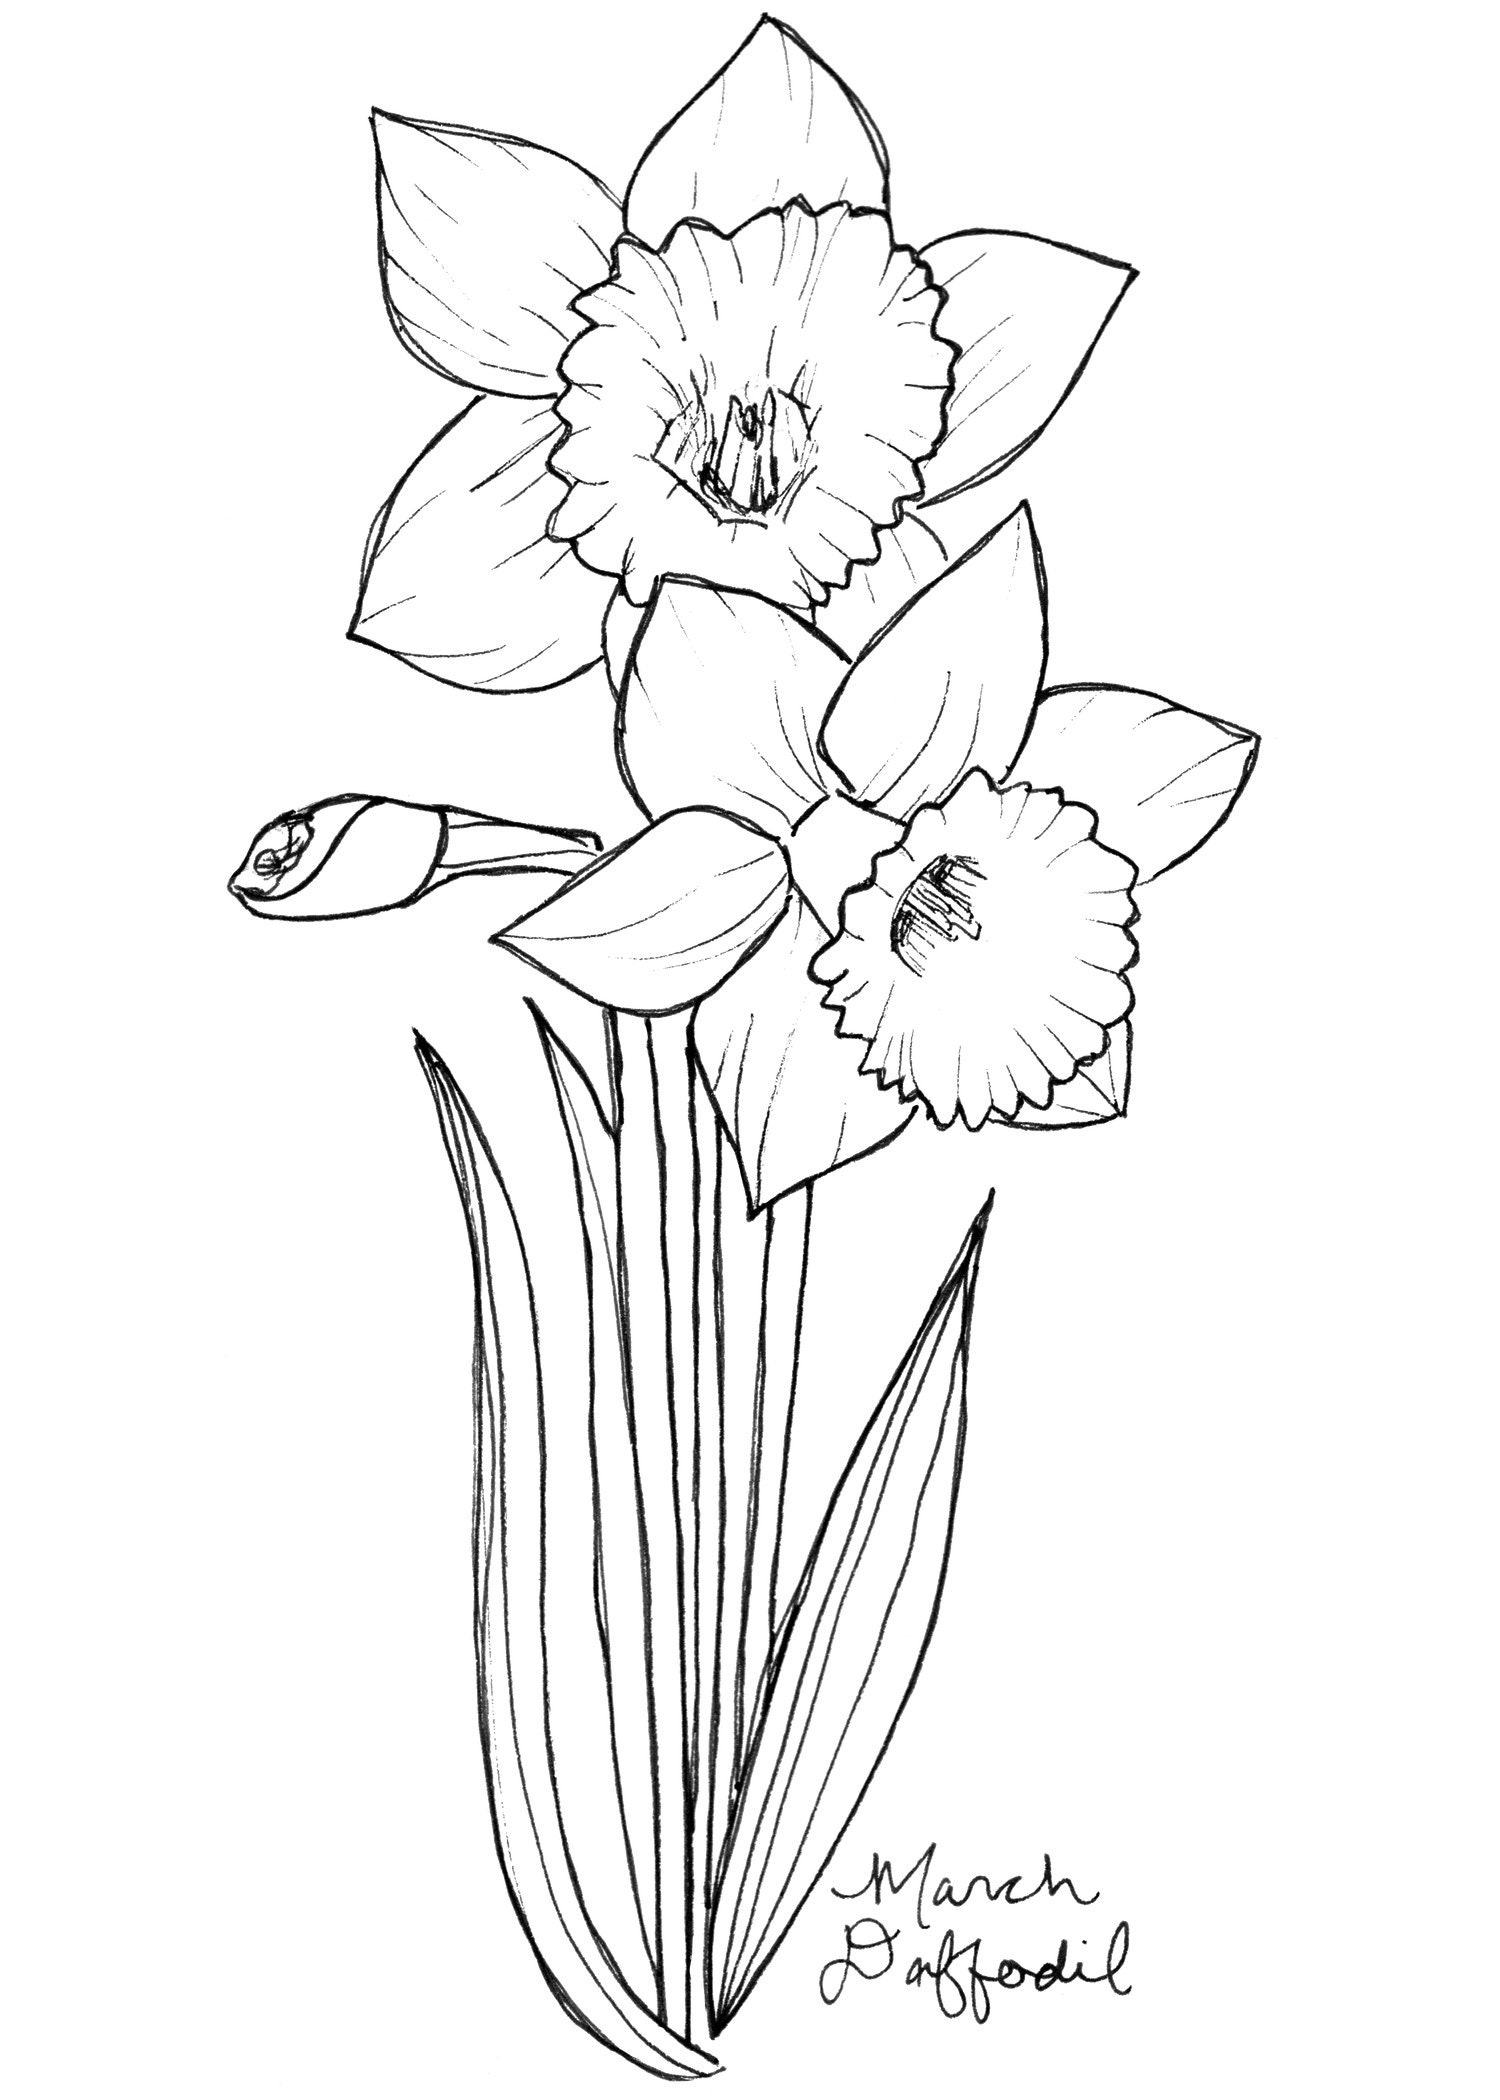 Buy March Daffodil Art Print / Birth Flower Print / Daffodil Wall ...